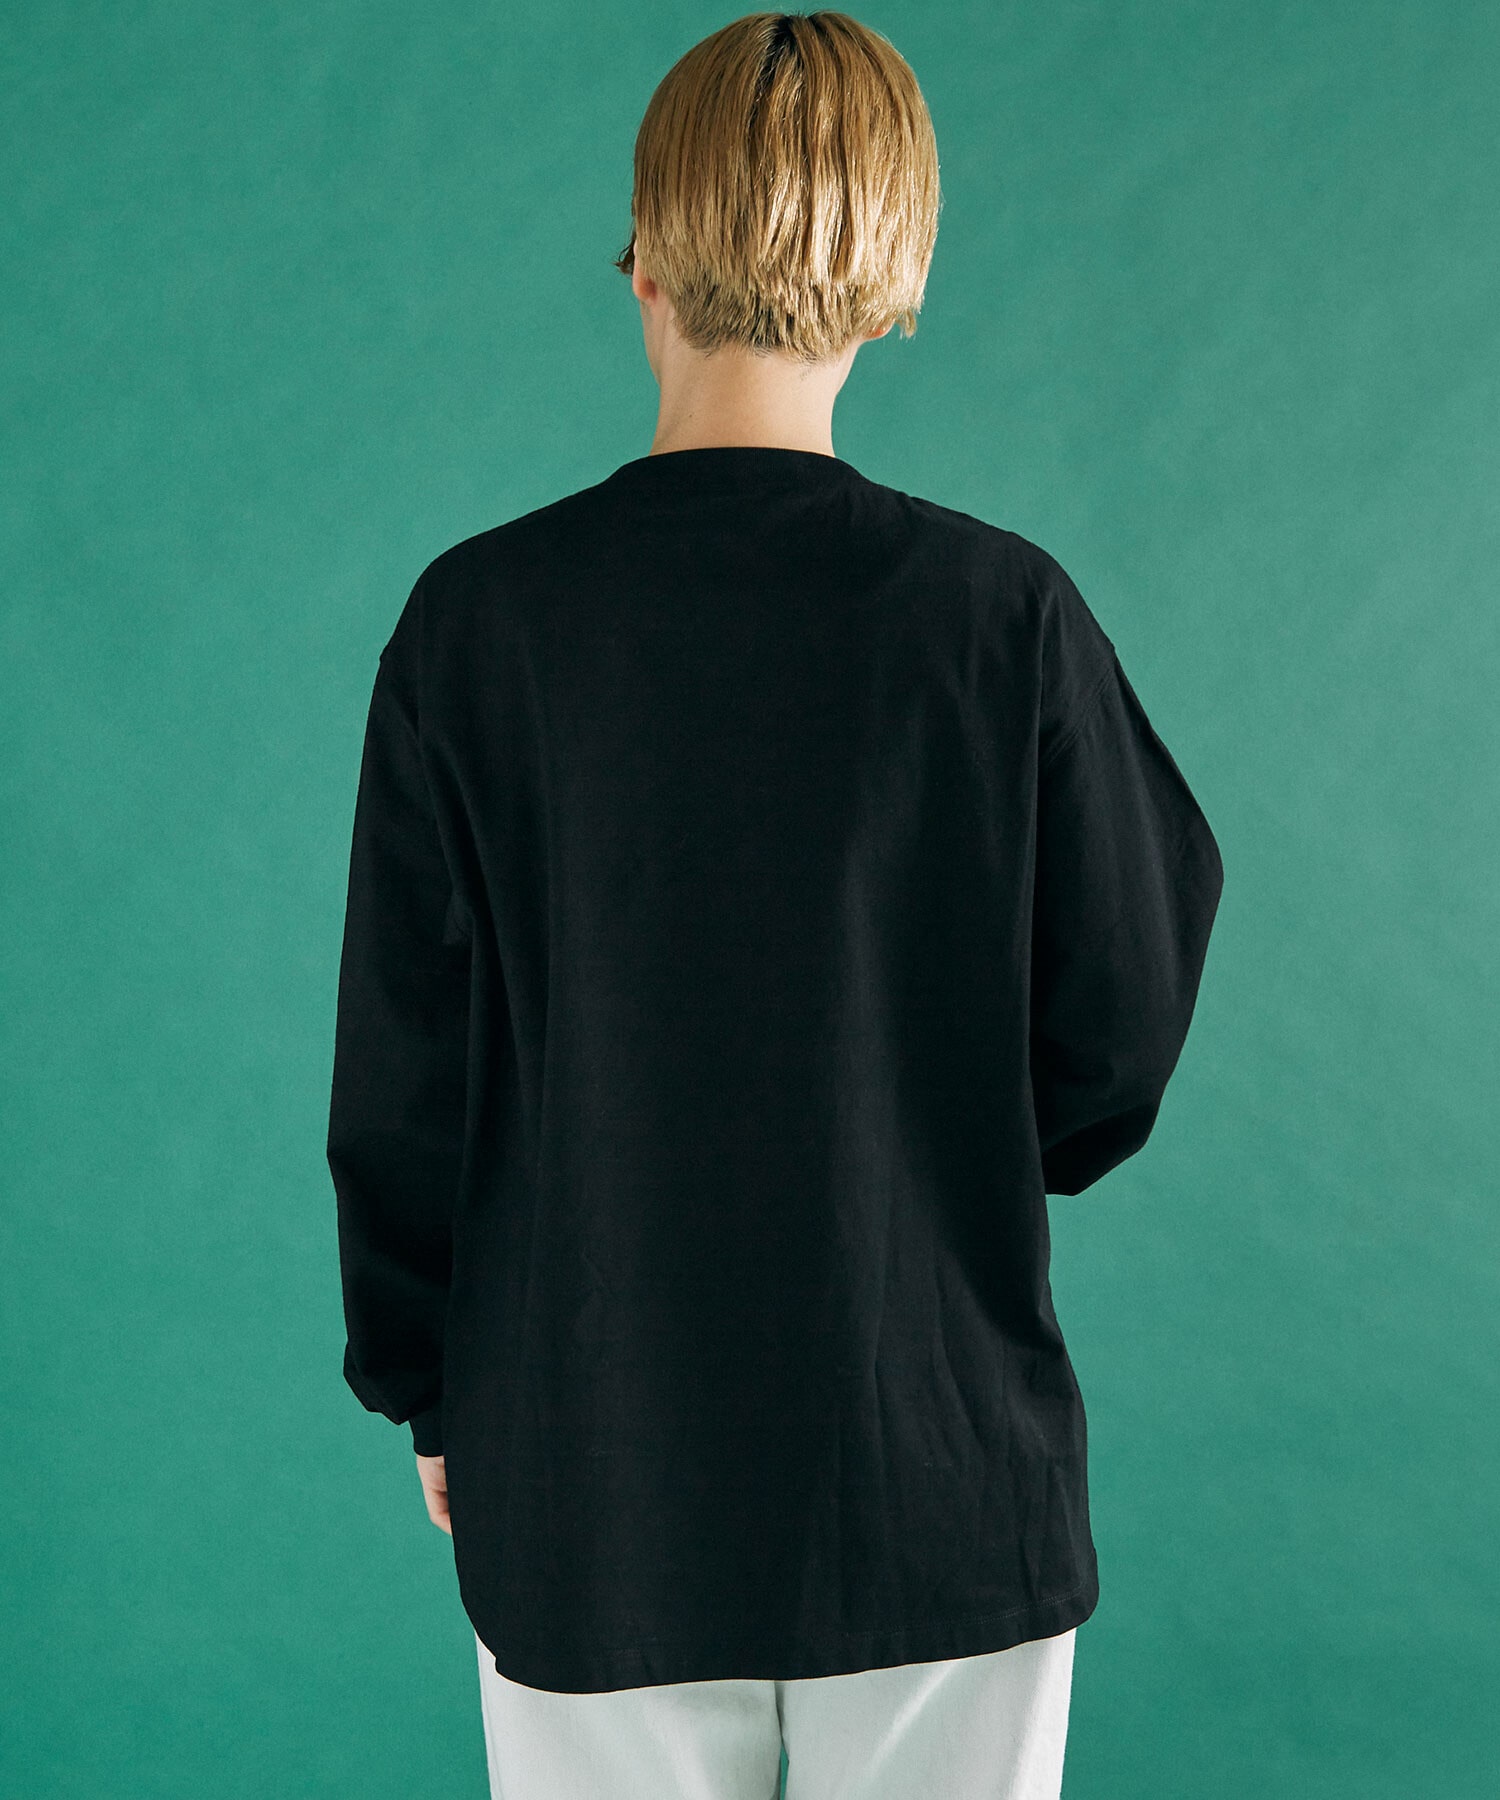 AMBIDEX Store △○バテンレース BIB Tシャツ(F BLACK): FLAT-cic-HATENA